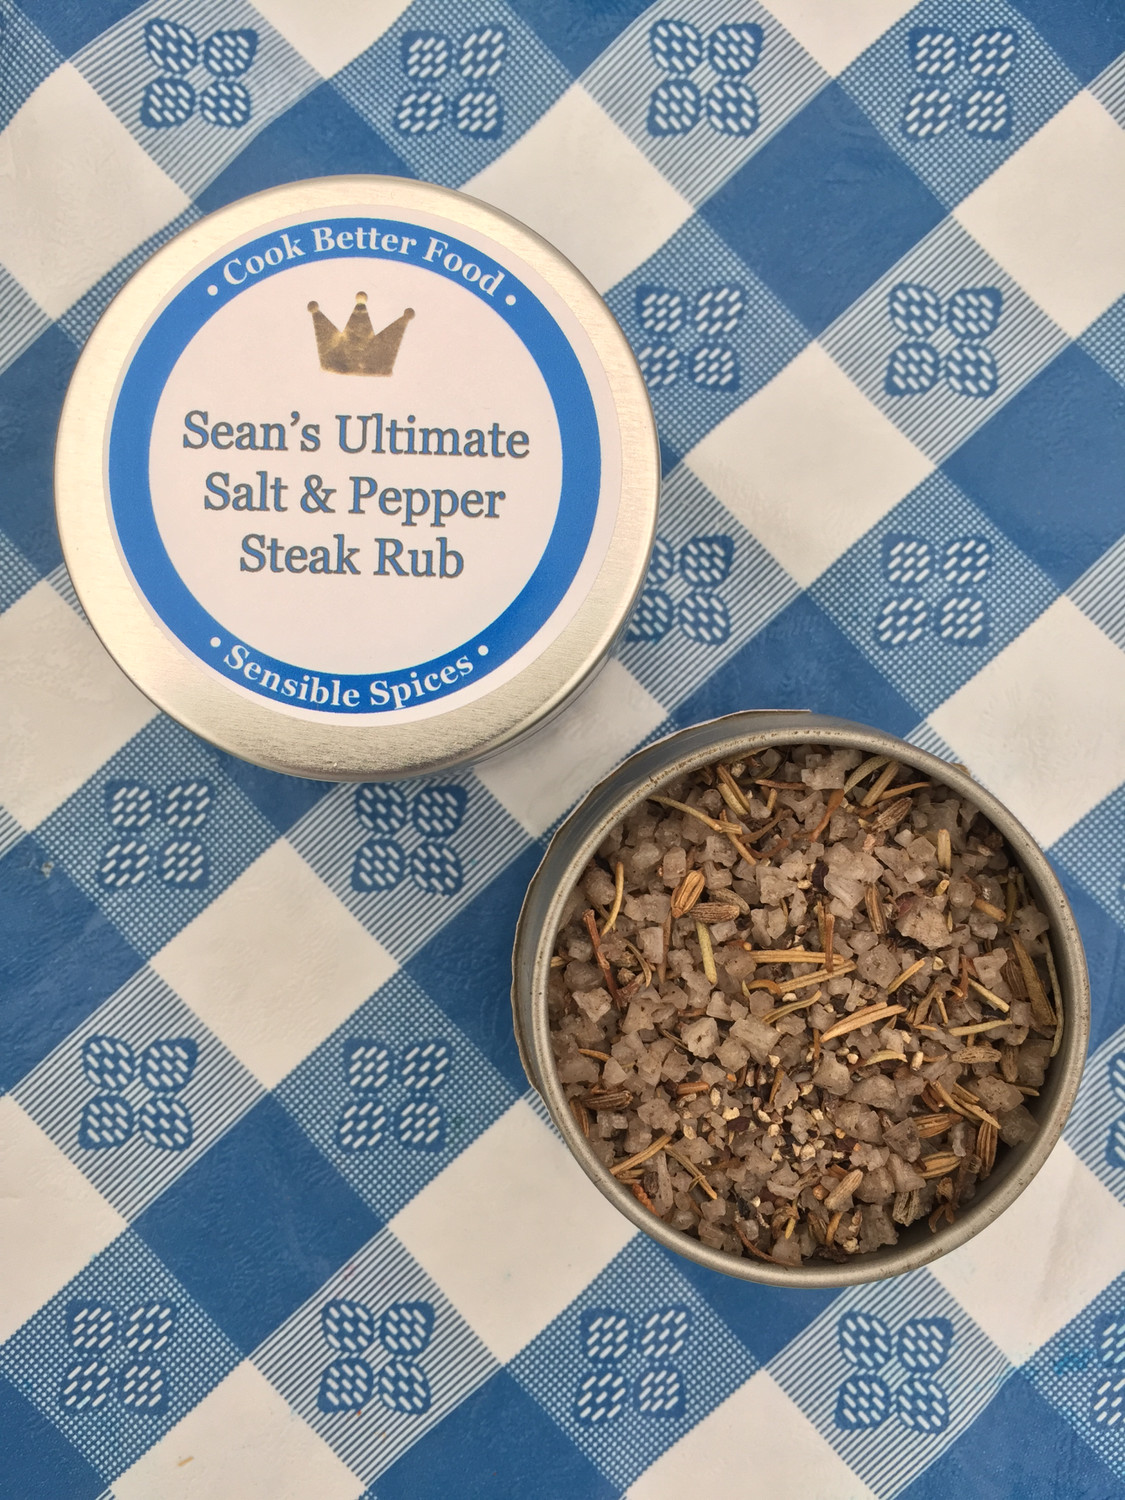 Sean's Ultimate Salt & Pepper Steak Rub